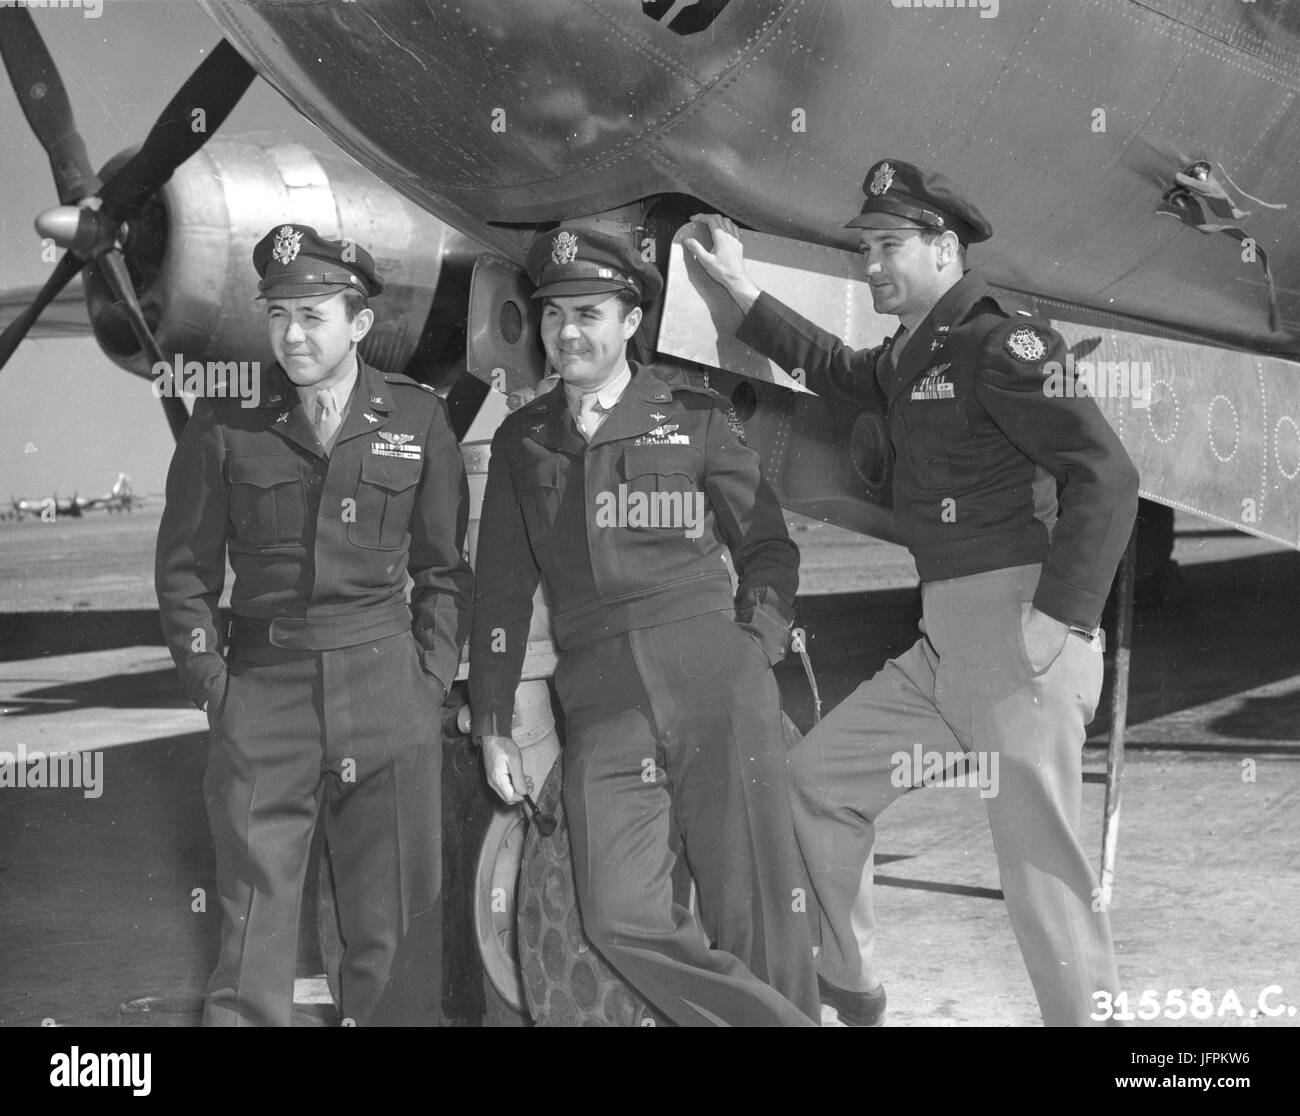 Publicity Foto der drei Offiziere, die die erste Atombombe über Japan abgeworfen: von links nach rechts: Maj Theodore J. Van Kirk, Navigator auf Hiroshima Mission; Col-Paul W. Tibbets, pilot, und Major Tom Ferebee, Bombardier. 1945 Stockfoto